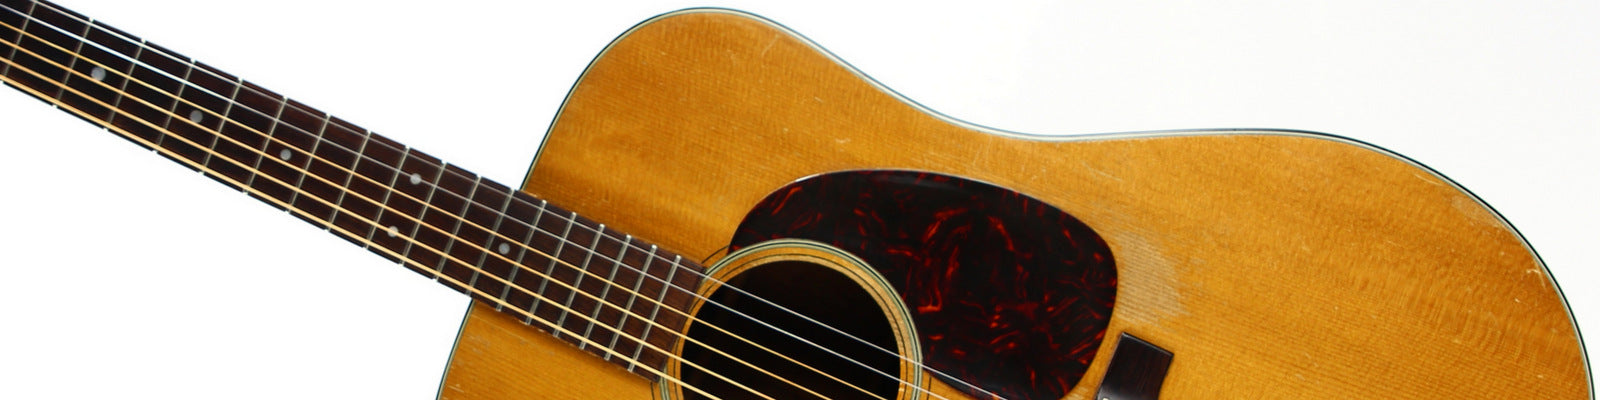 1960's Martin D-18 Vintage Acoustic Guitar